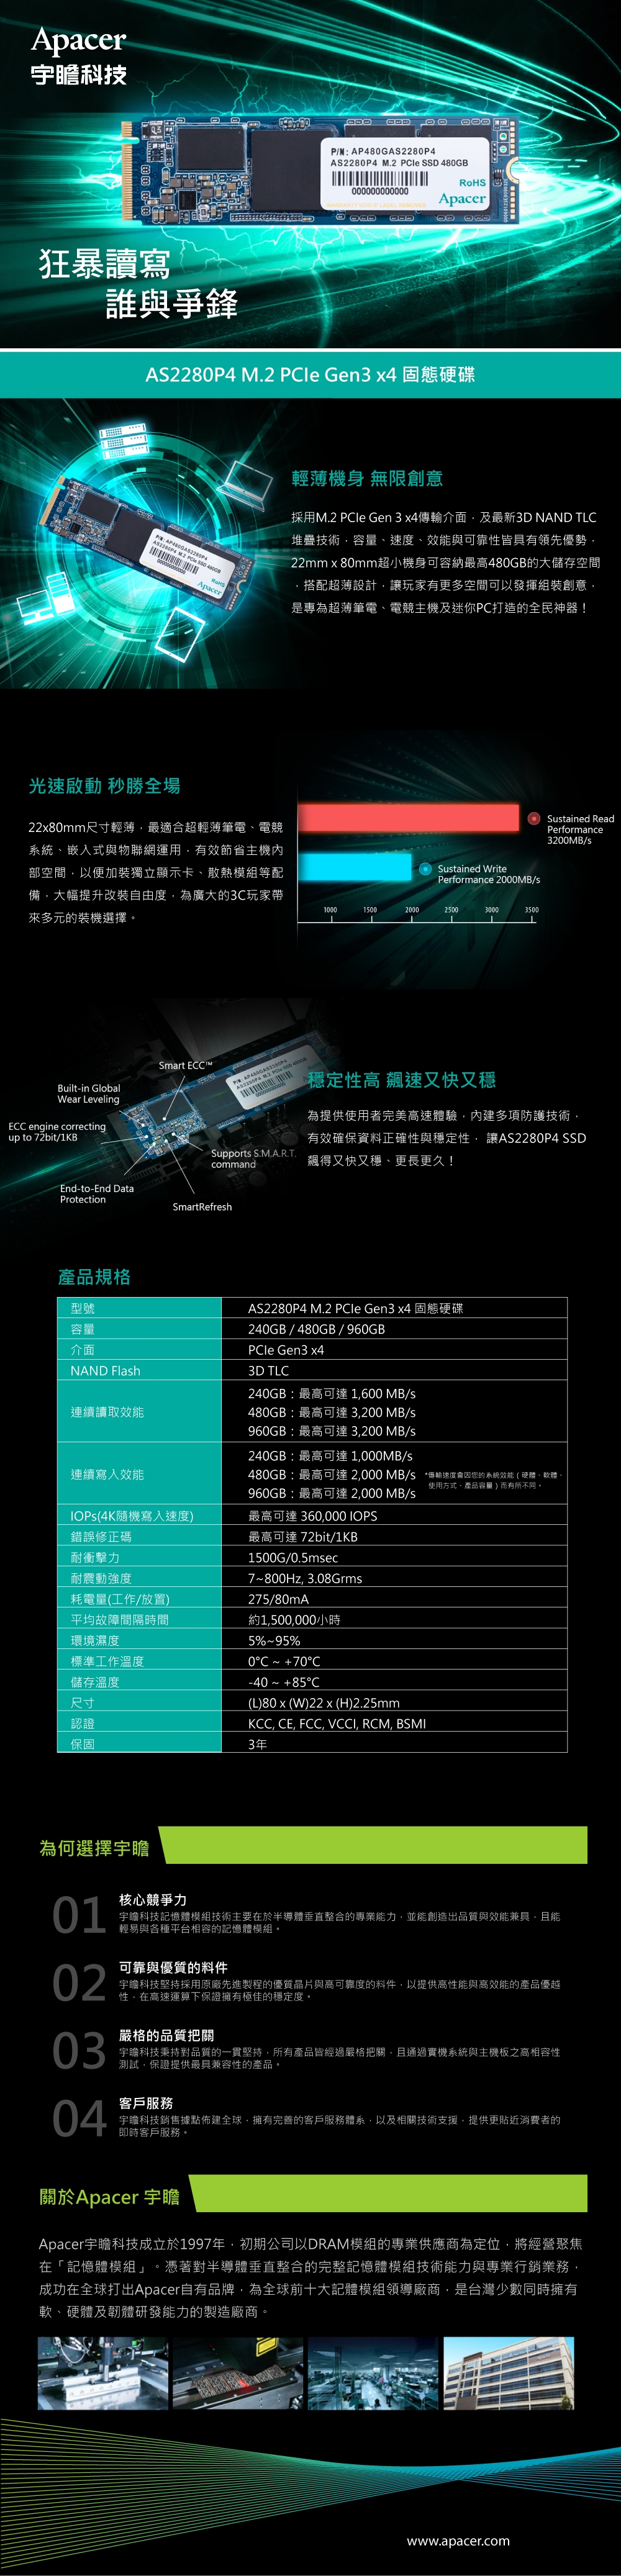 APACER AS2280P4 M.2 PCIe Gen3 x4 480G固態硬碟